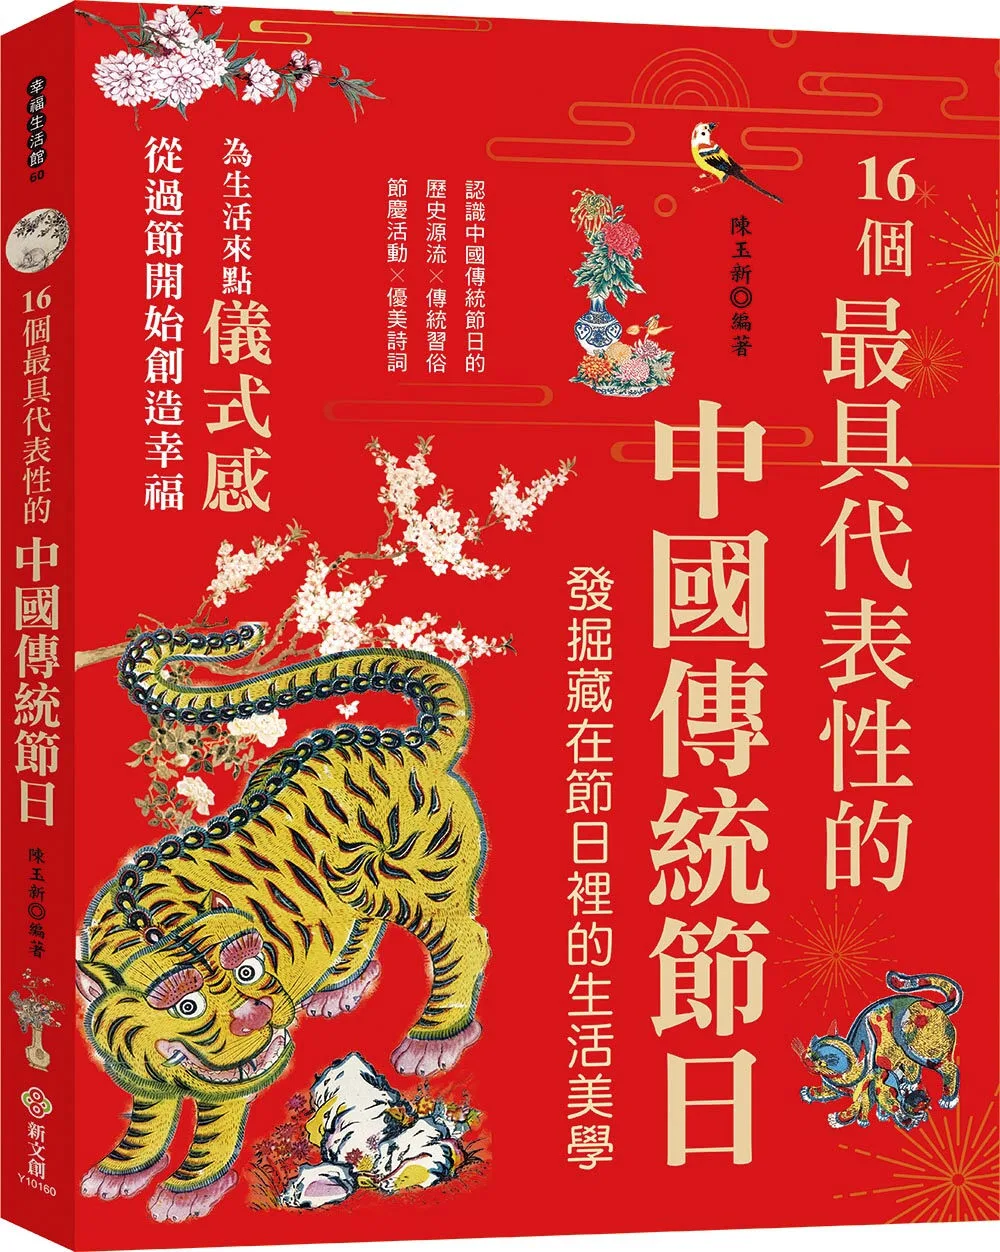 16個最具代表性的中國傳統節日：認識中國傳統節日的歷史源流╳傳統習俗╳節慶活動╳優美詩詞，發掘隱藏在節慶裡的生活美學與風俗習慣